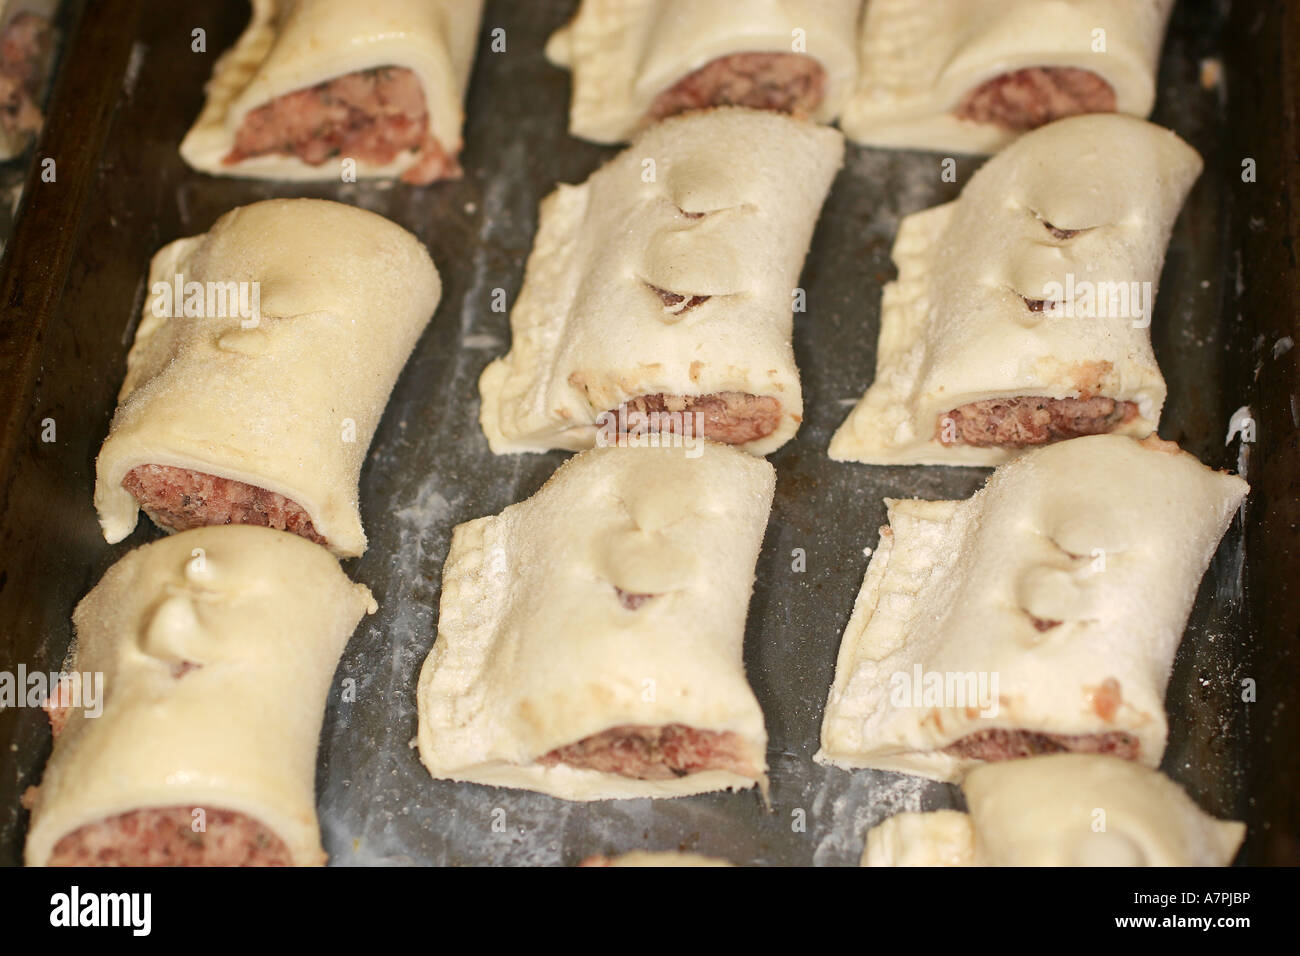 Petits rouleaux de saucisses faites maison, à l'état congelé sur la plaque de cuisson pour la cuisson. Banque D'Images